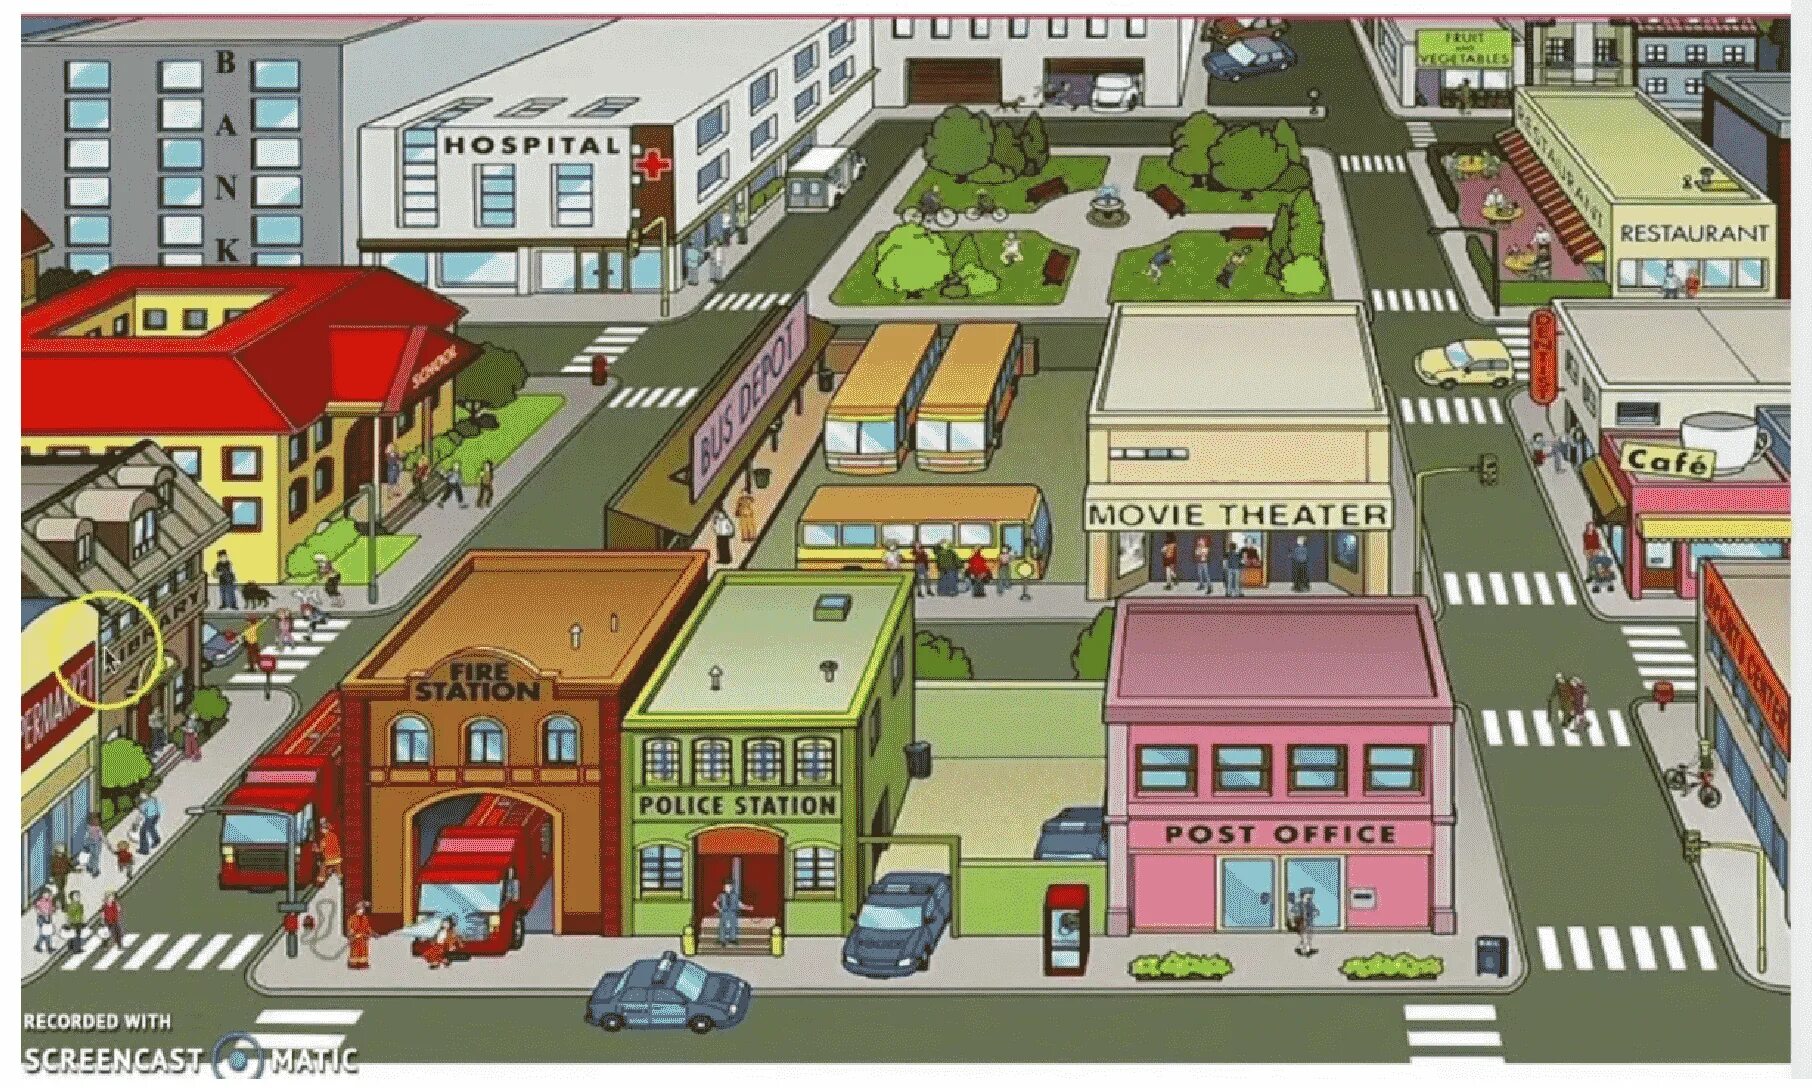 Places in Town для детей. Картинка города для описания. План города для детей. Здания на английском тема город.